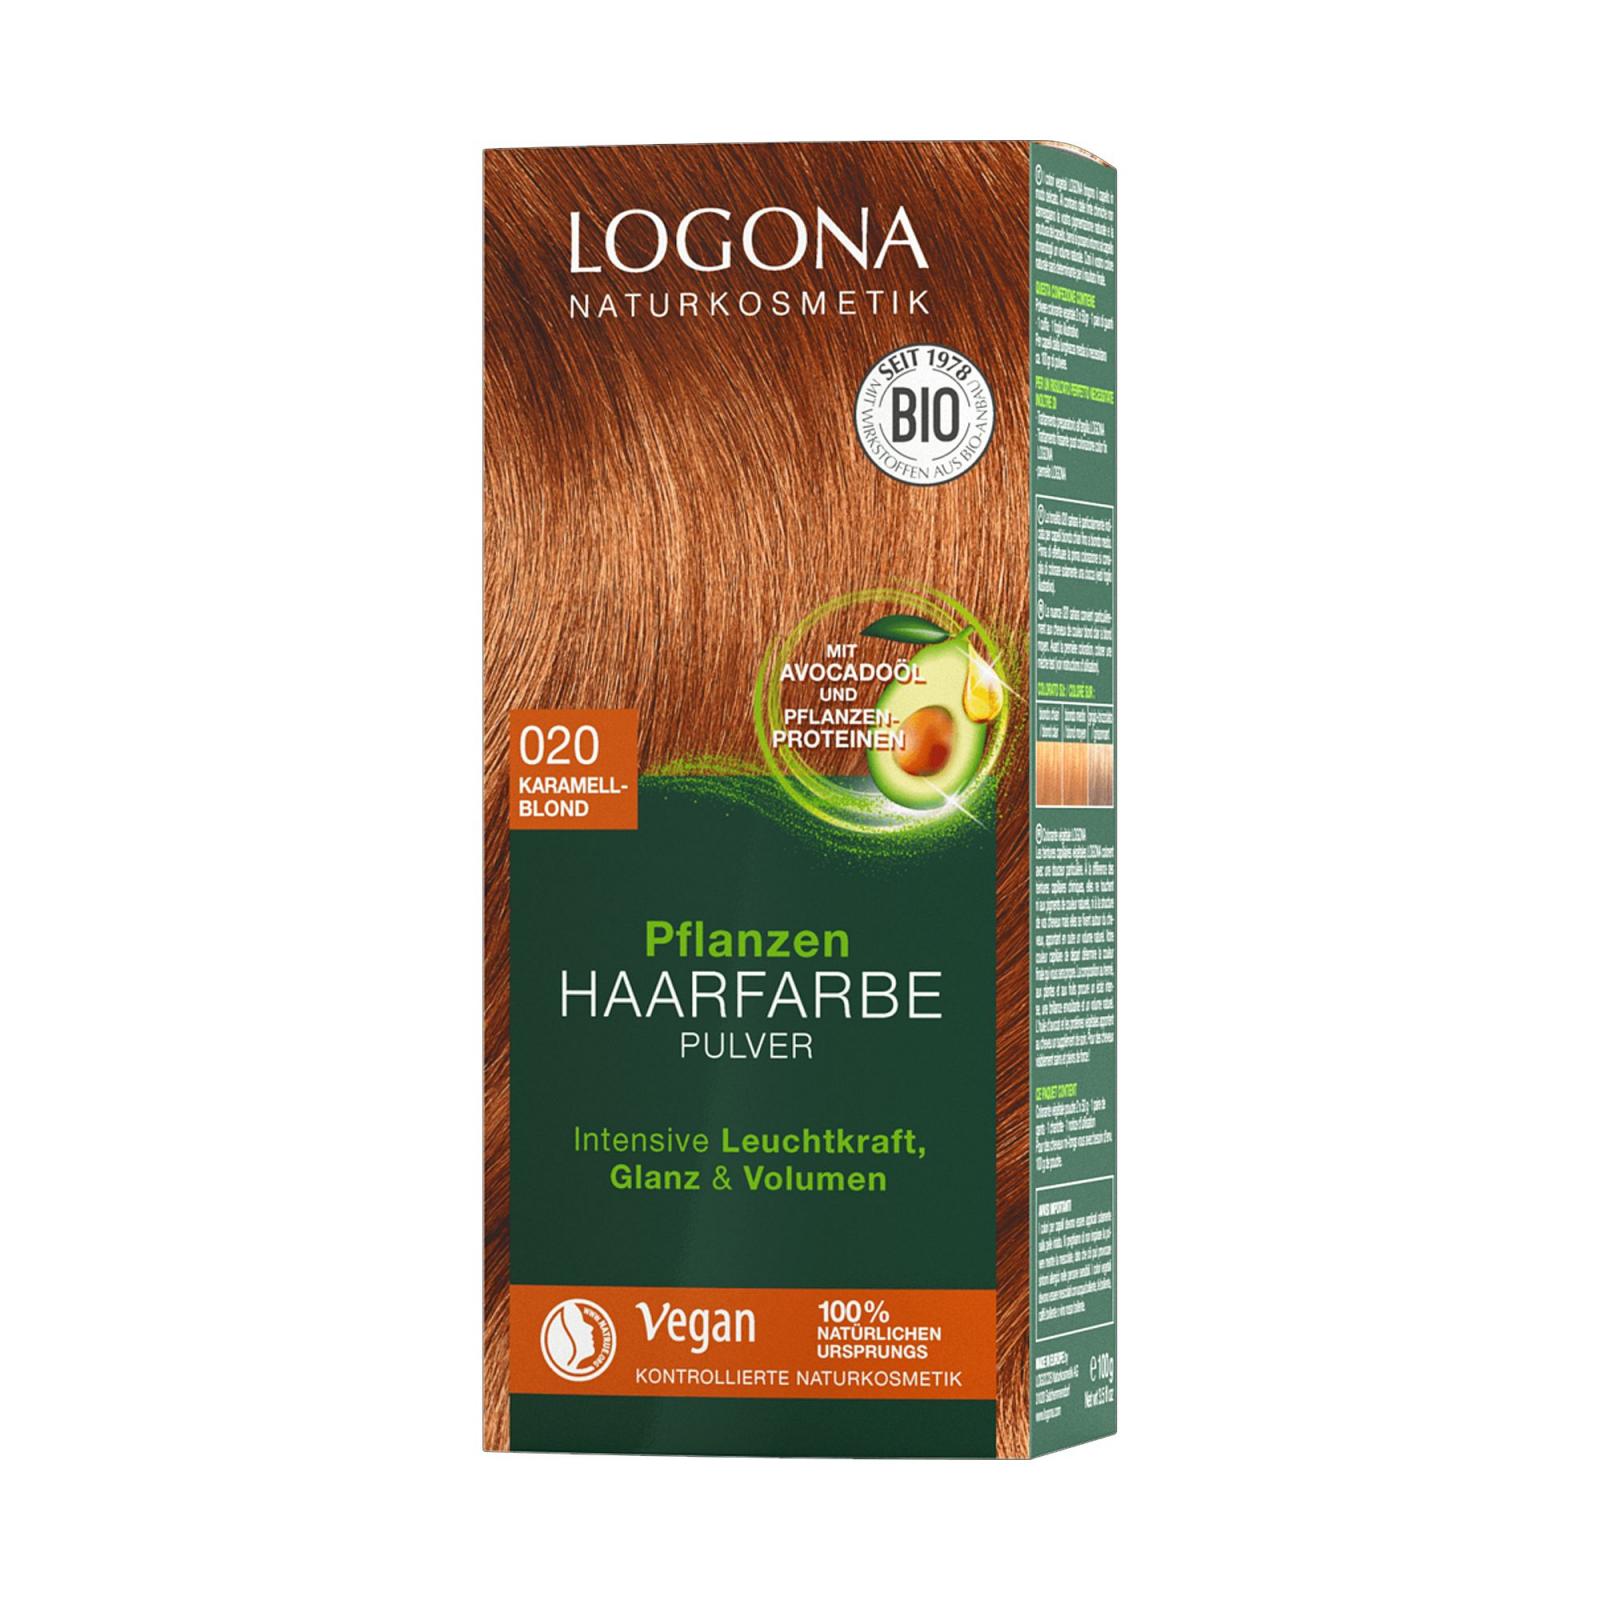 Logona Prášková barva na vlasy karamelová blond, 020 100 g